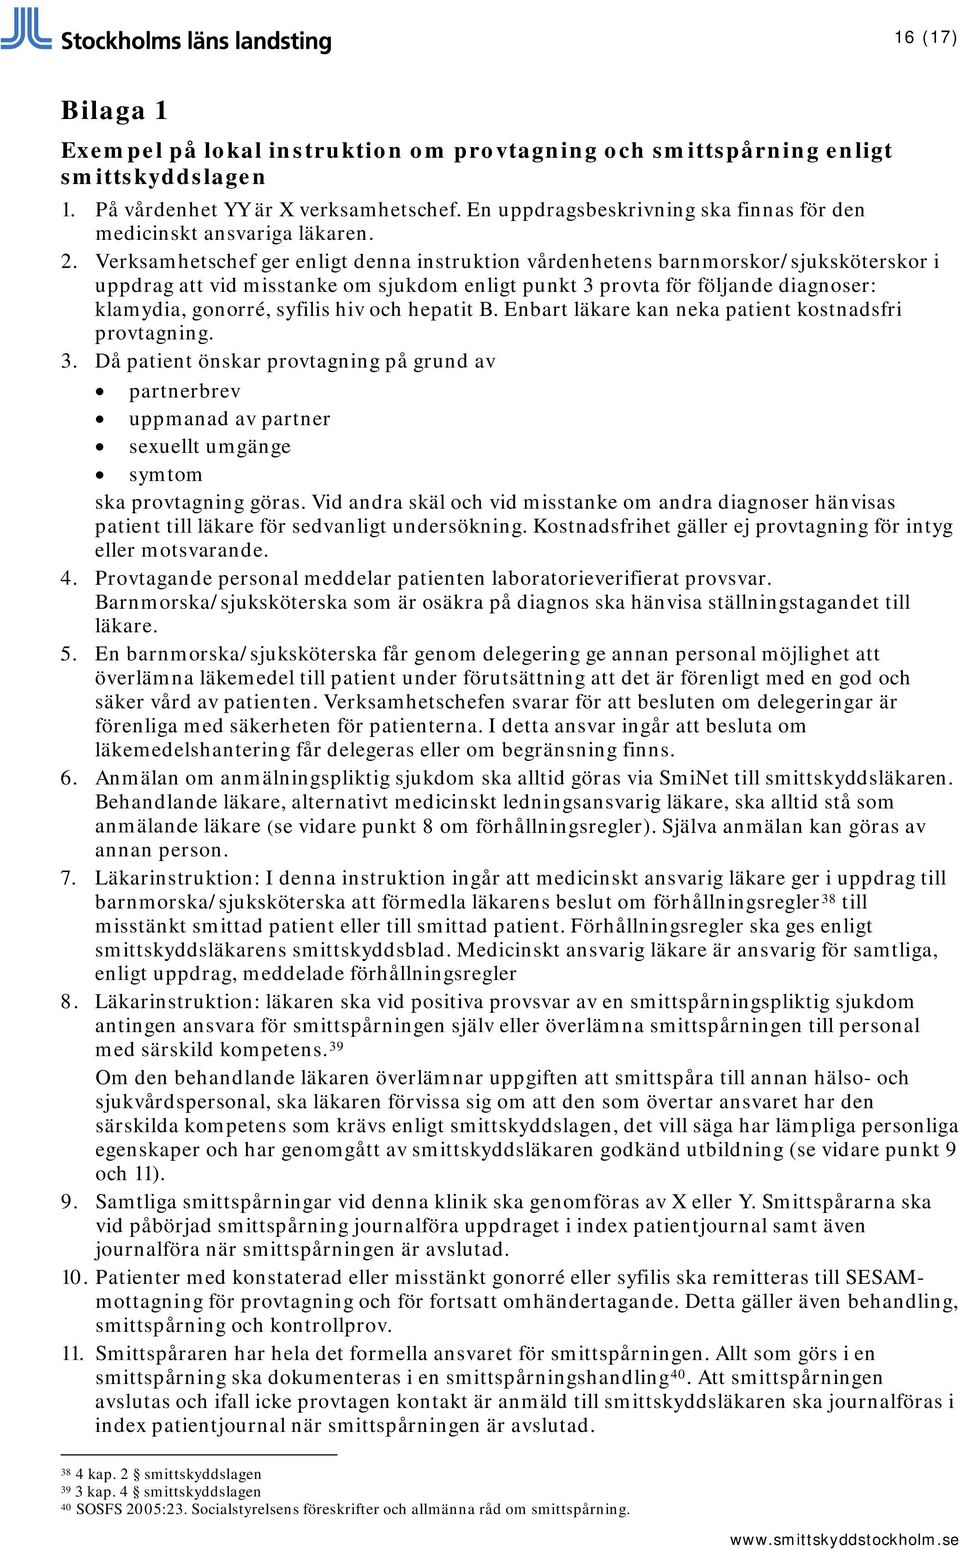 Verksamhetschef ger enligt denna instruktion vårdenhetens barnmorskor/sjuksköterskor i uppdrag att vid misstanke om sjukdom enligt punkt 3 provta för följande diagnoser: klamydia, gonorré, syfilis